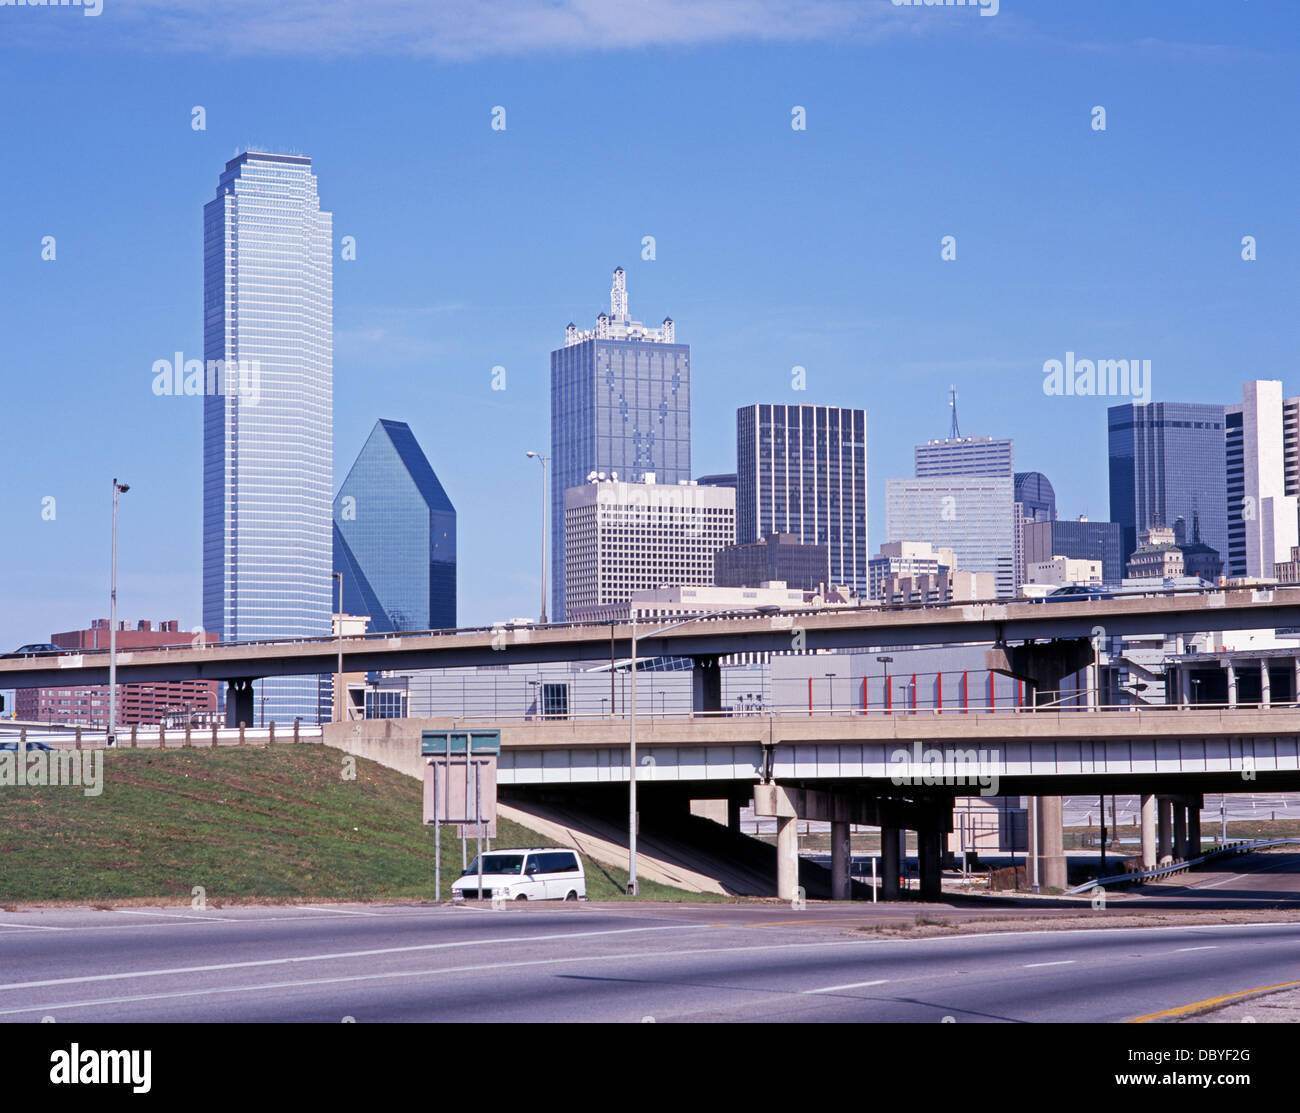 City skyscrapers, Dallas, Texas, USA. Stock Photo